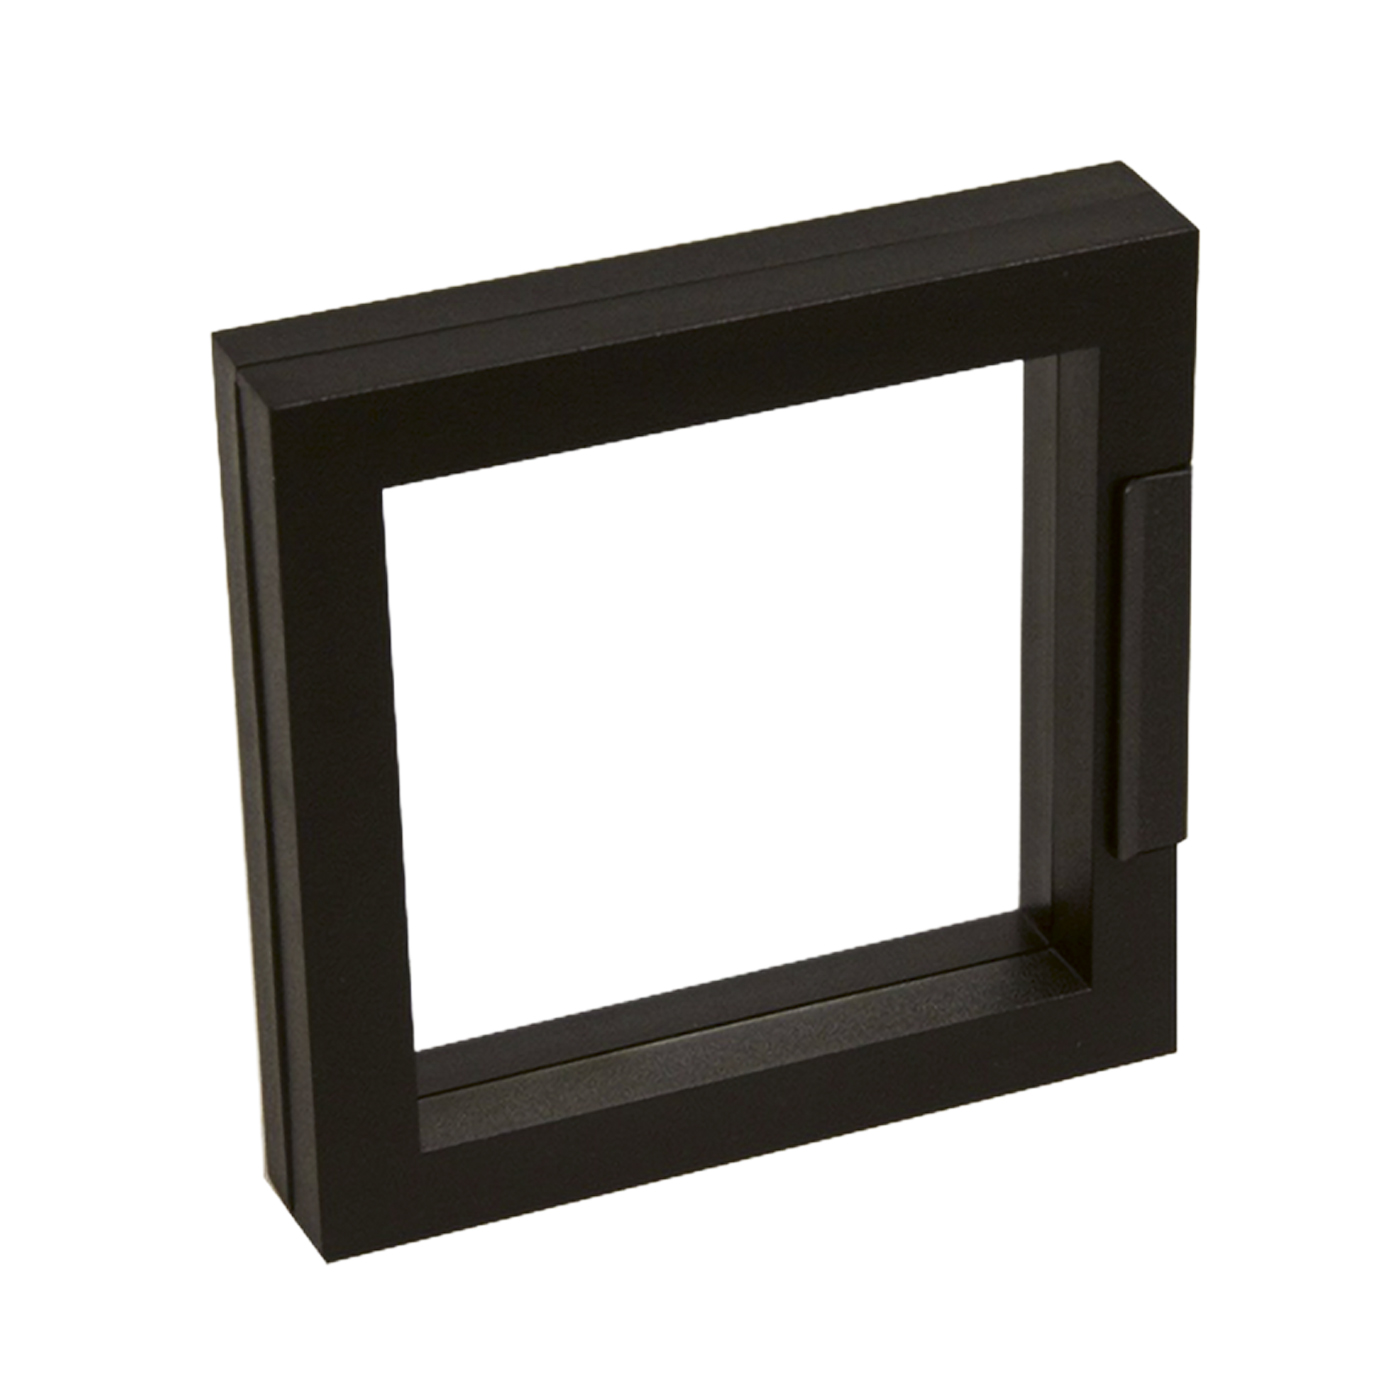 Schmucketui "Eco-Frame", schwarz, 100 x 100 x 20 mm - 1 Stück